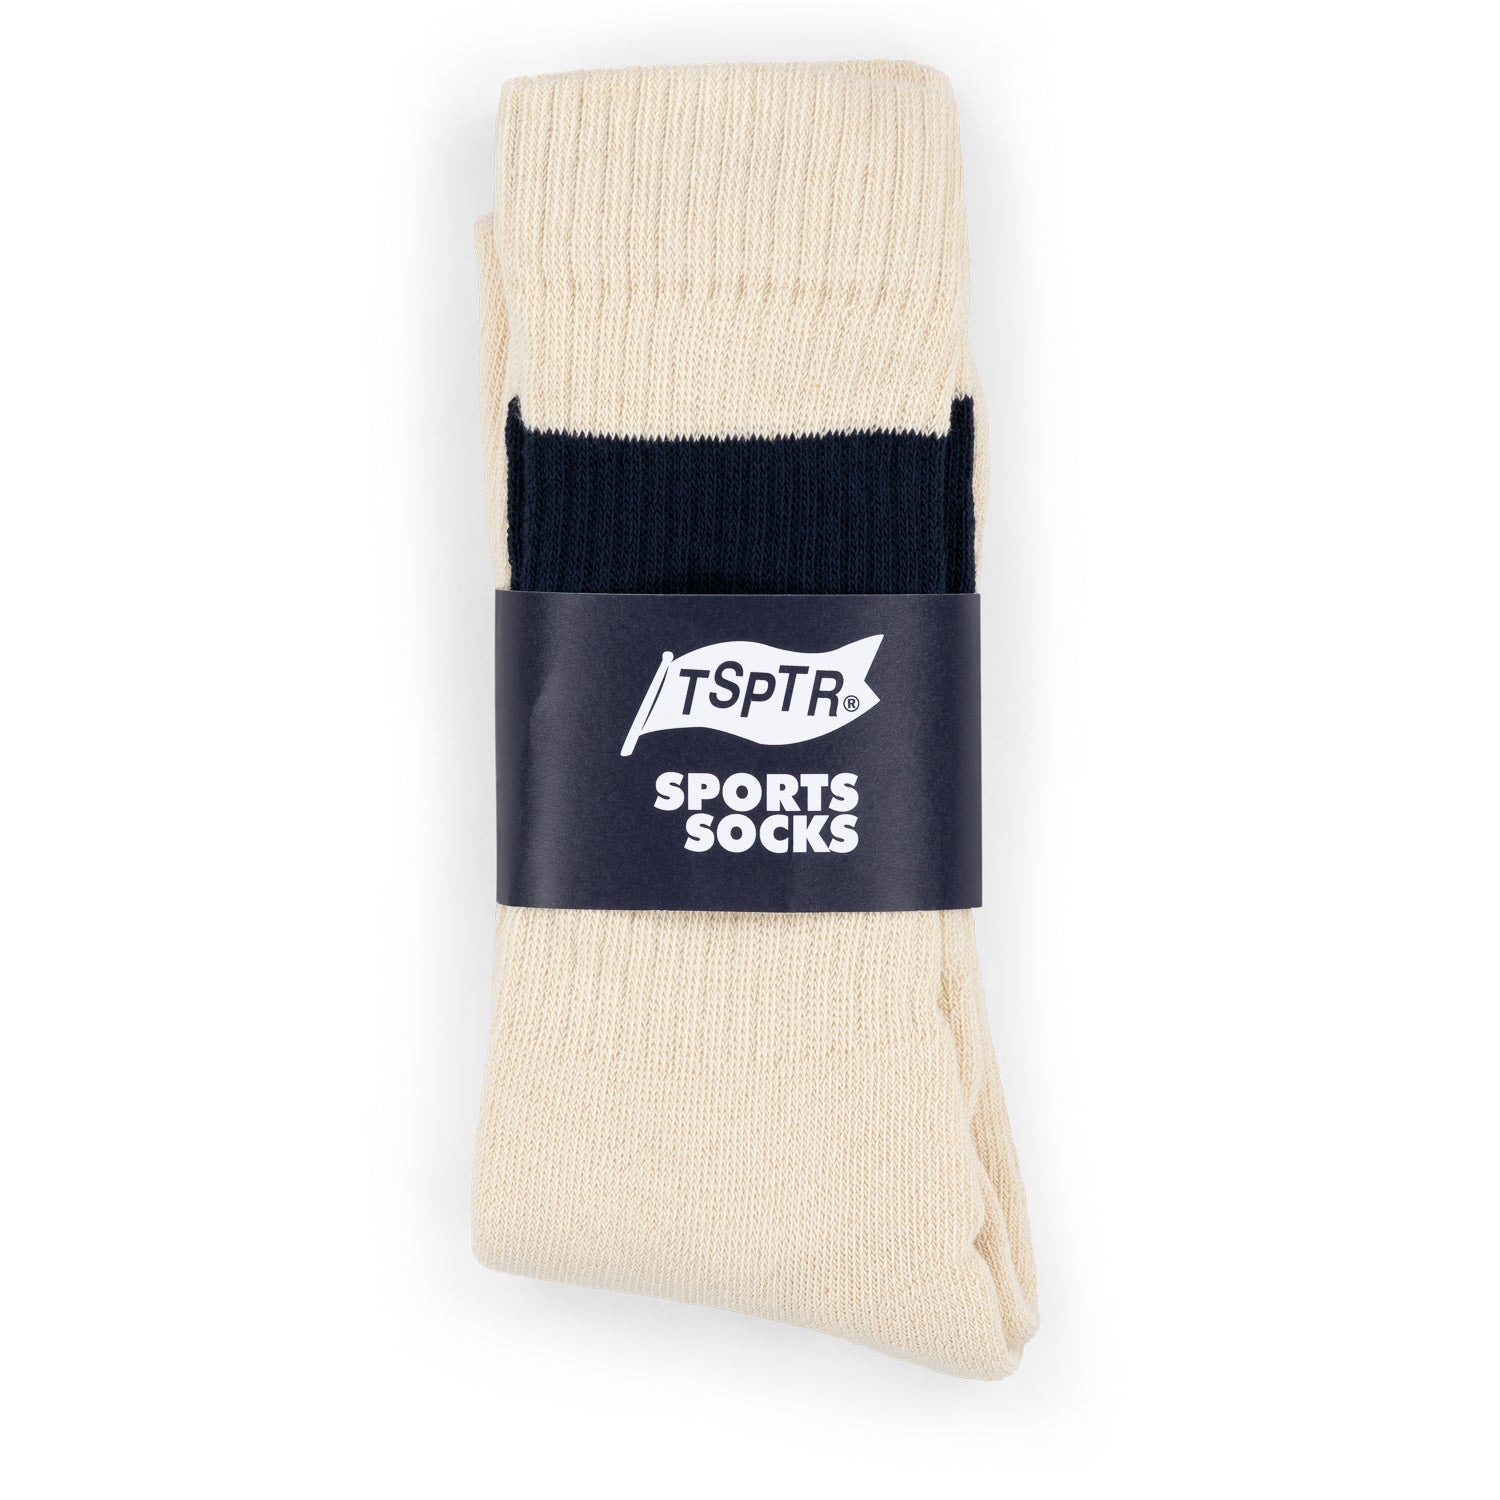 SPORTS Socks